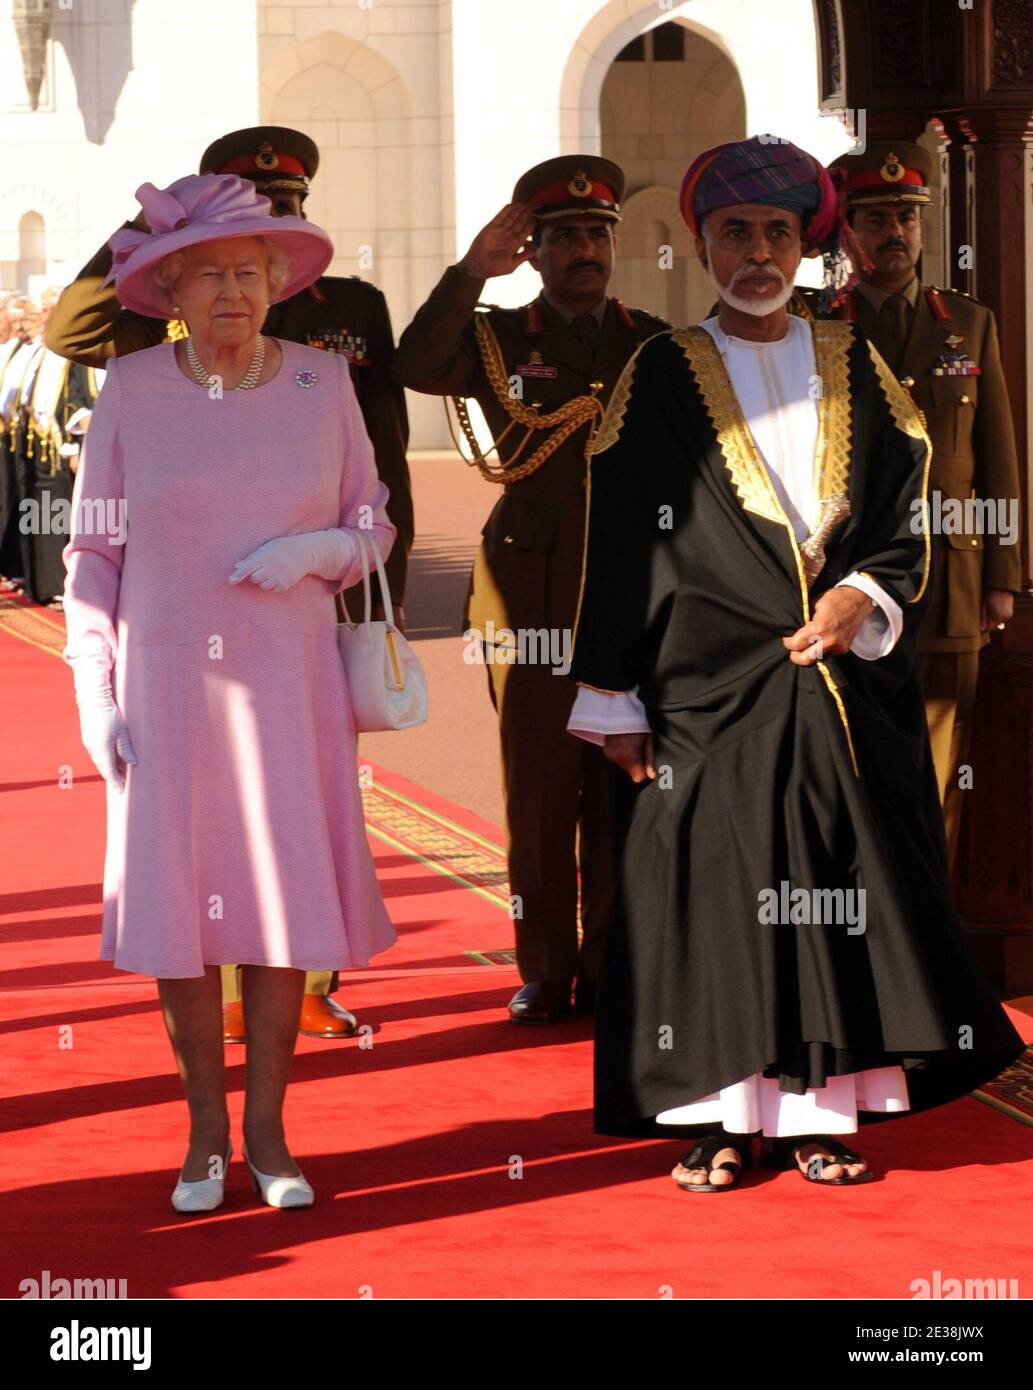 La reine Elizabeth II de Grande-Bretagne marche avec le sultan d'Oman, sa Majesté le sultan Qaboos bin a dit lors d'une visite au Palais Al-Alam à Muscat, Oman, le 26 novembre 2010. Photo de ONA/Mousse/ABACAPRESS.COM Banque D'Images